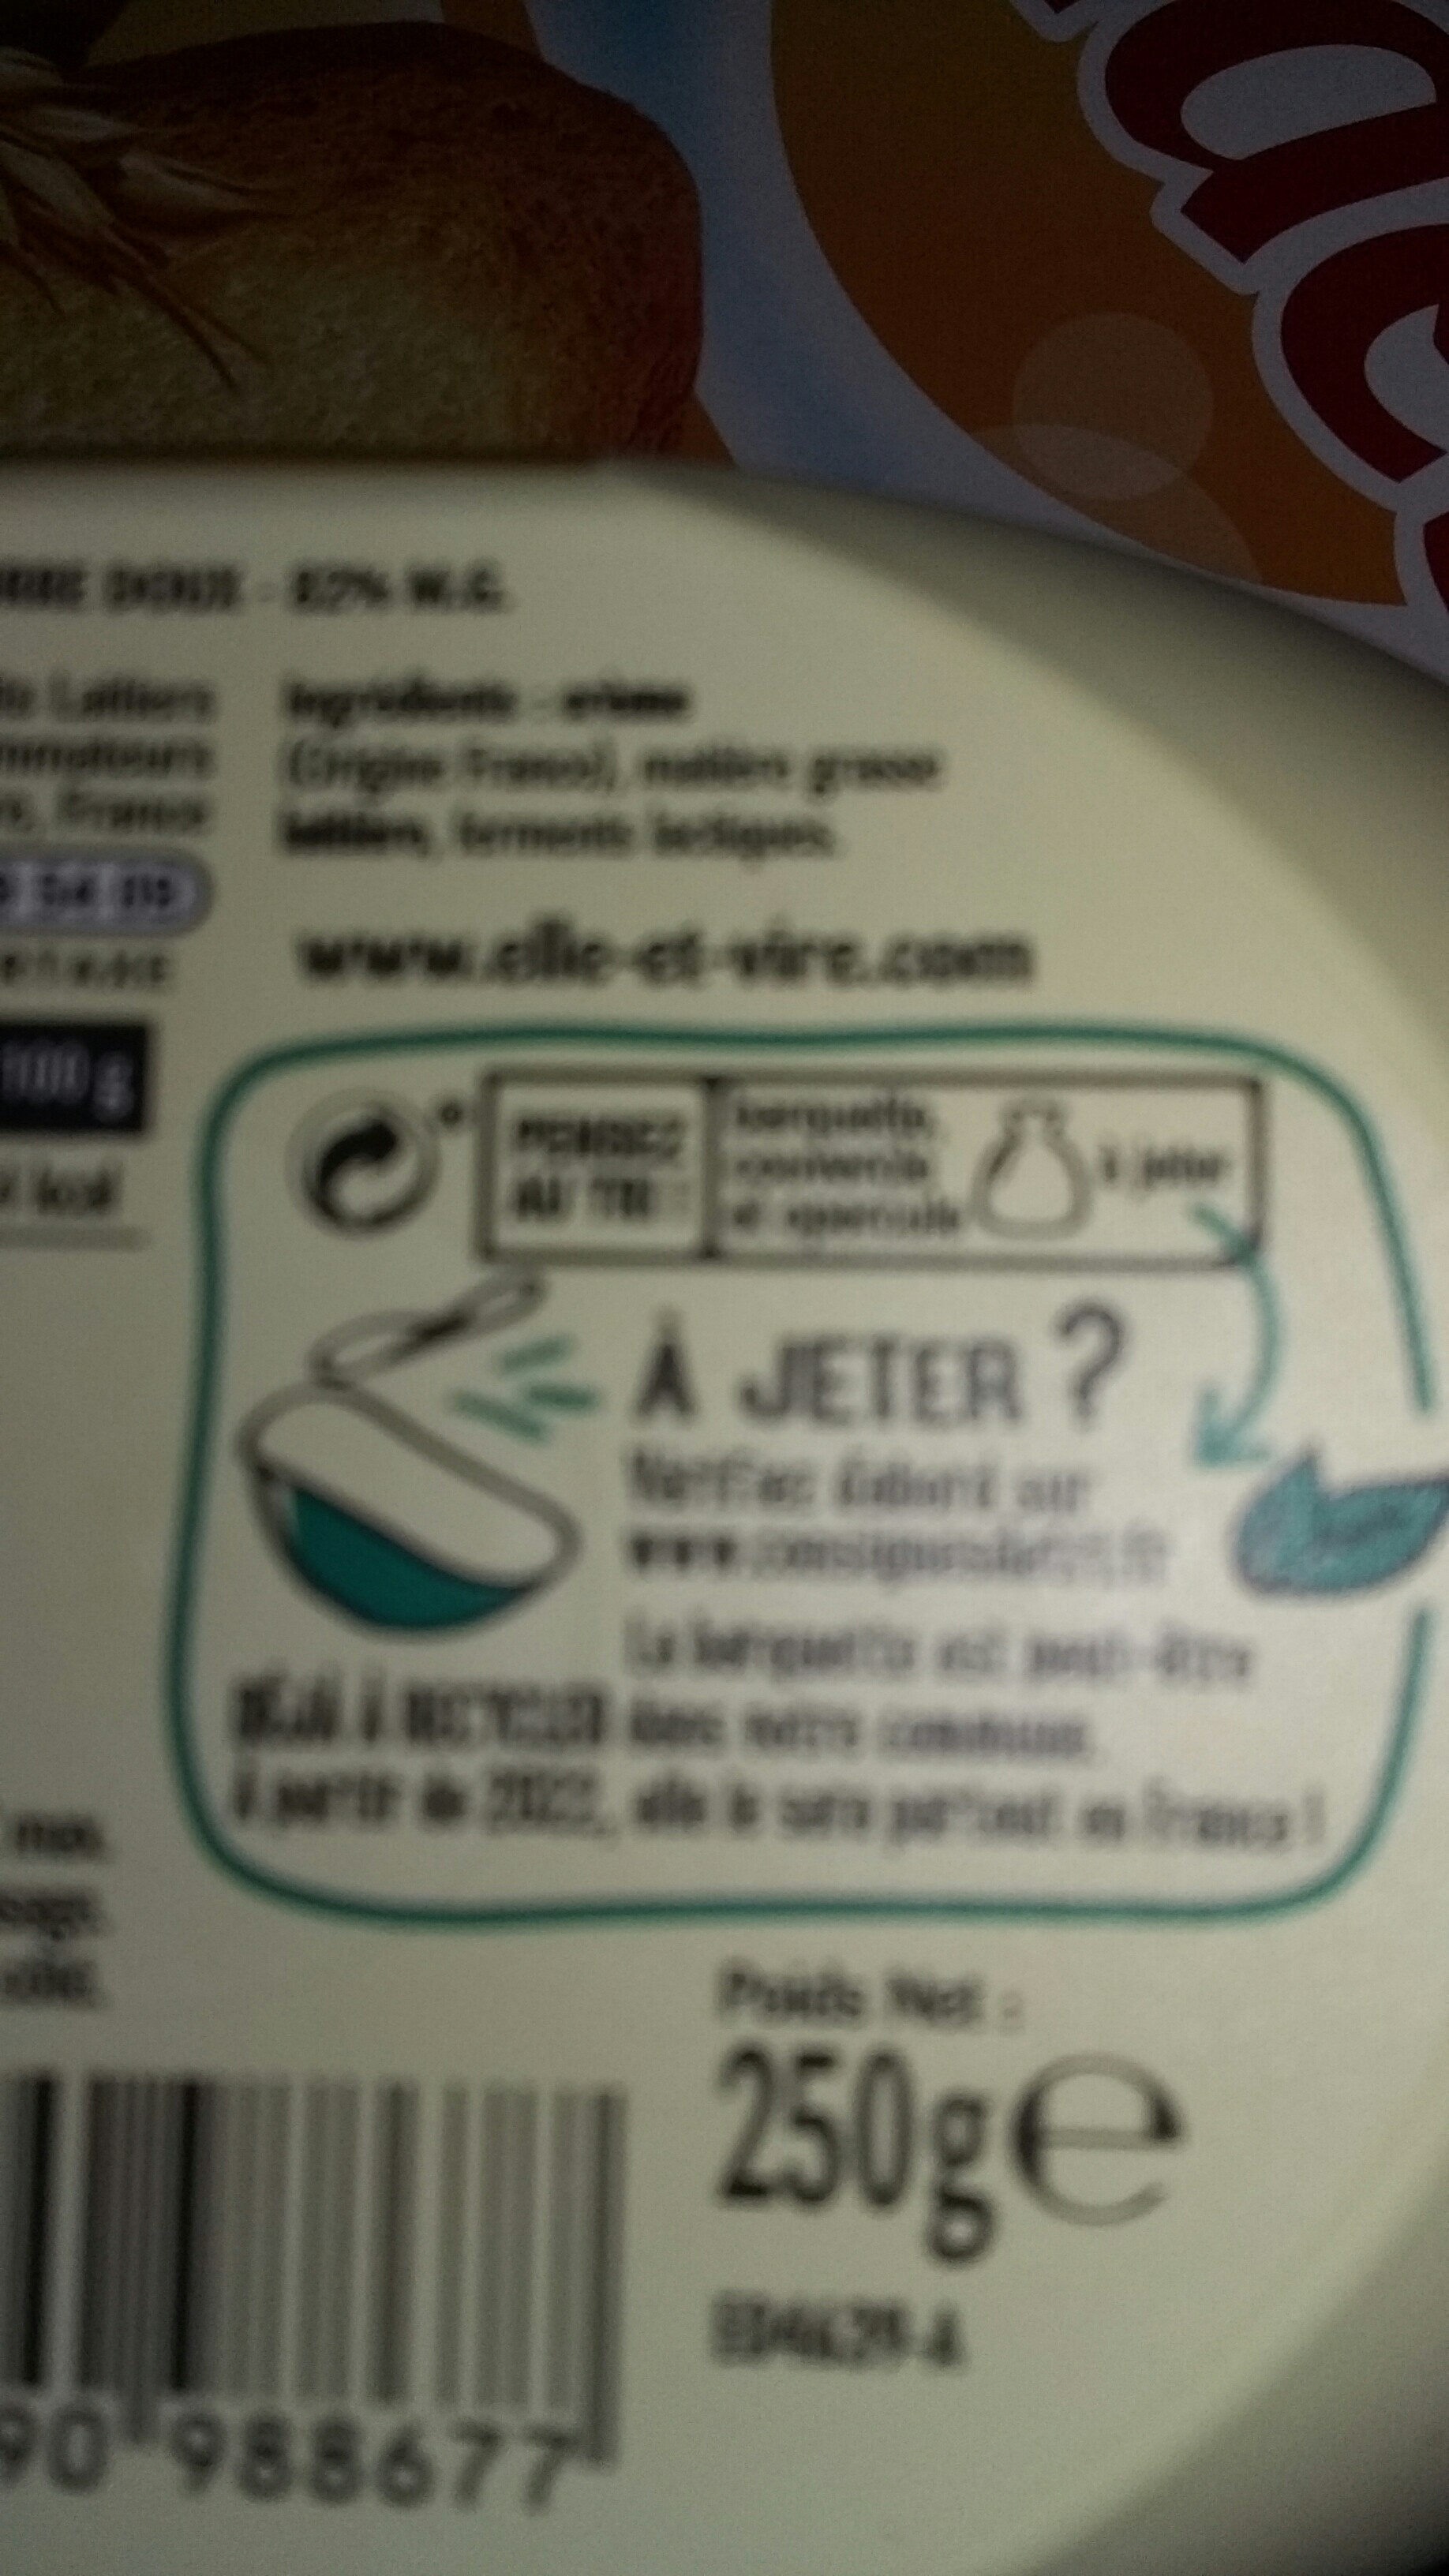 Le Beurre Tendre Doux - Instruction de recyclage et/ou informations d'emballage